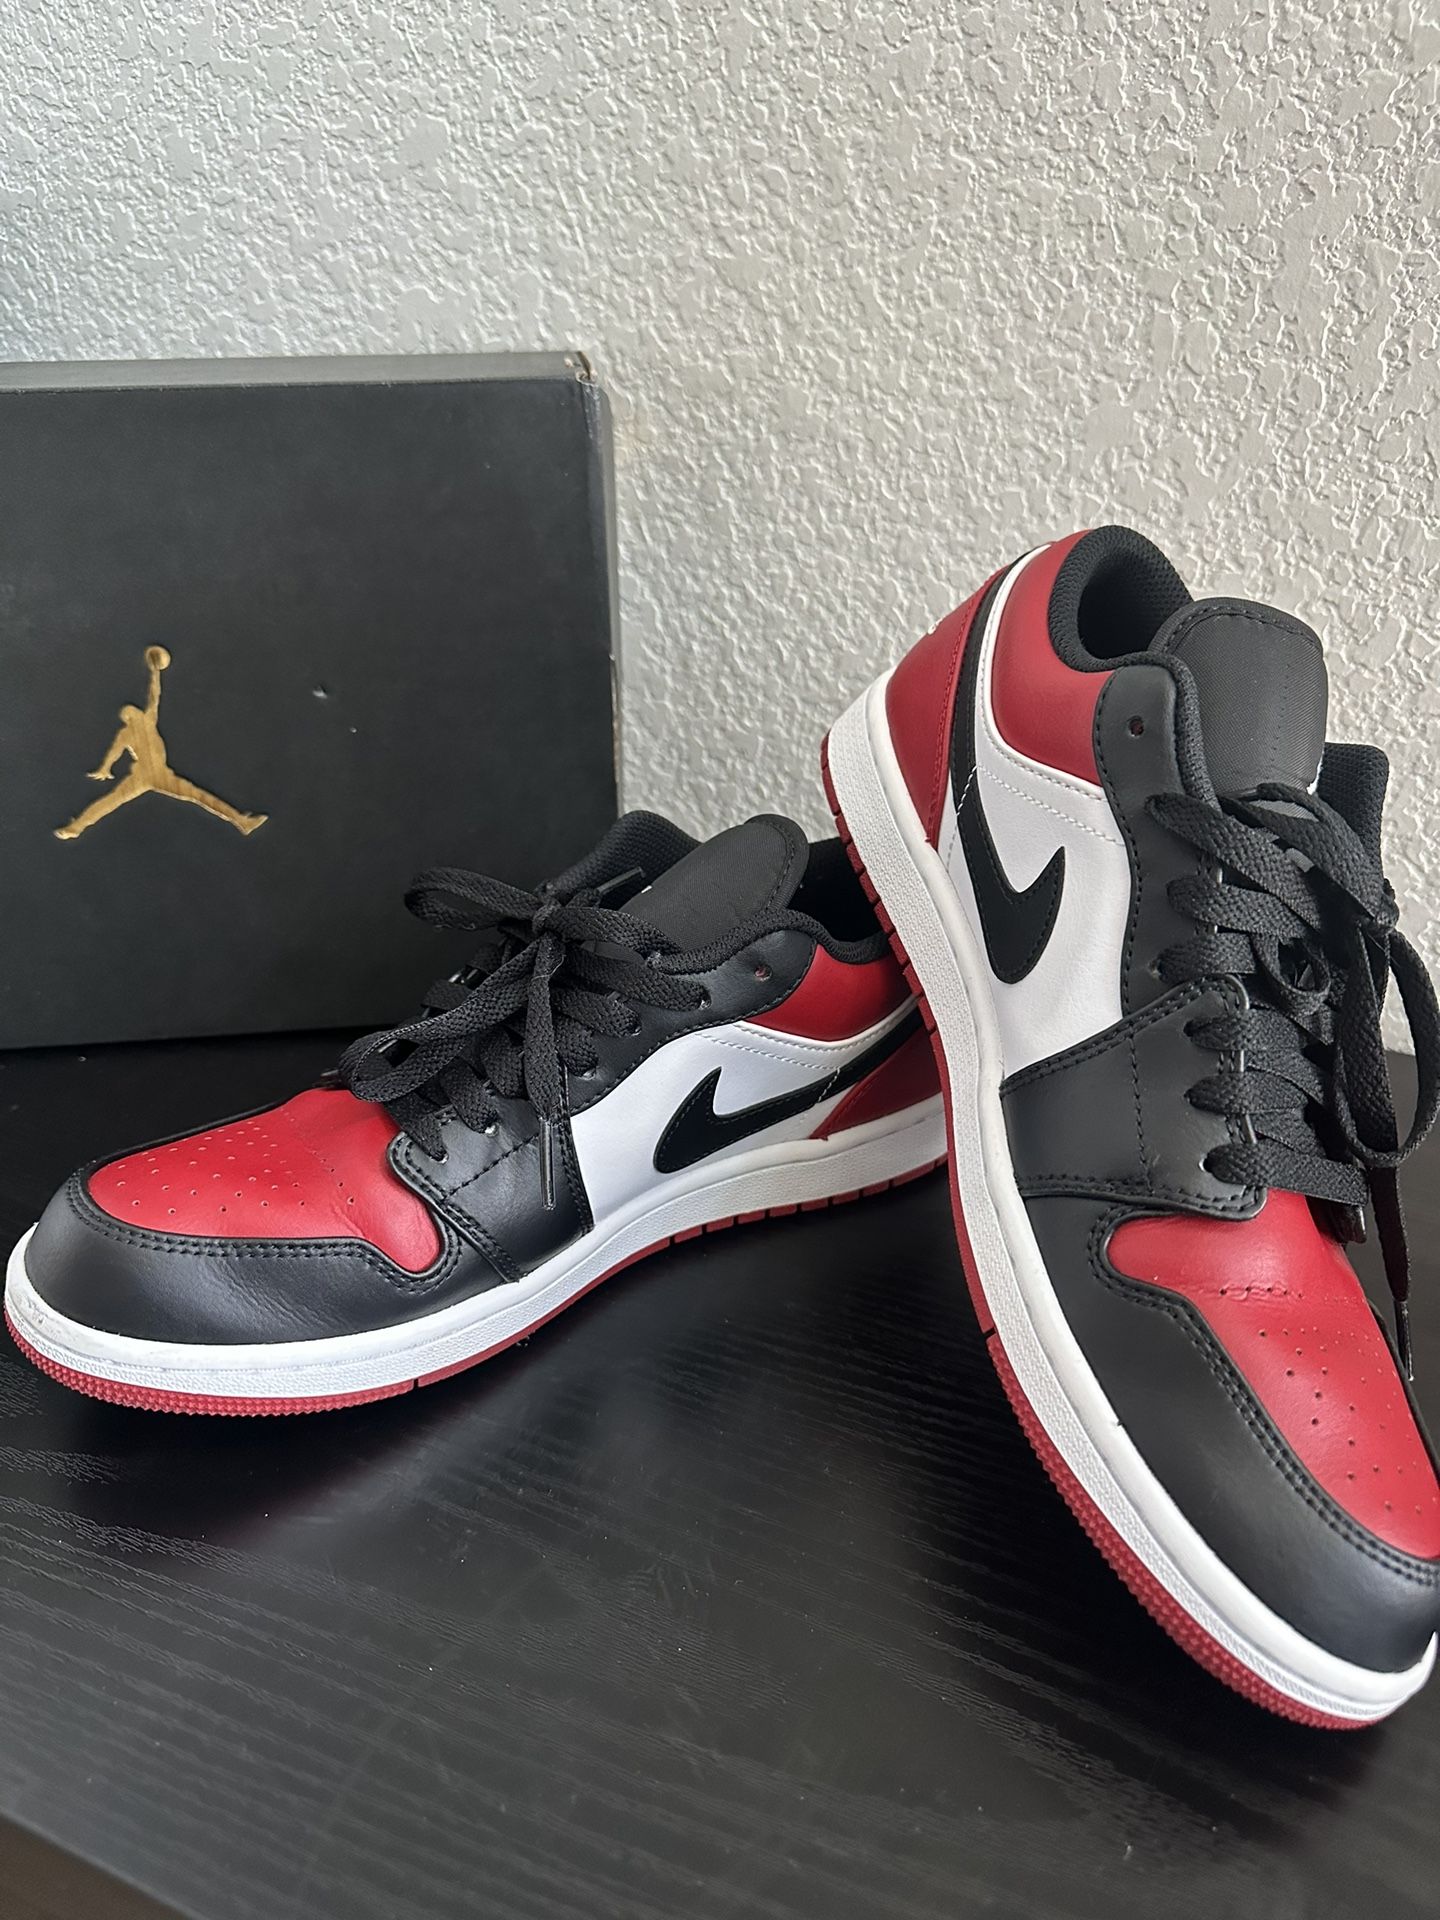 Nike Jordans - Mens 8.5 - Low - Red/white/black 